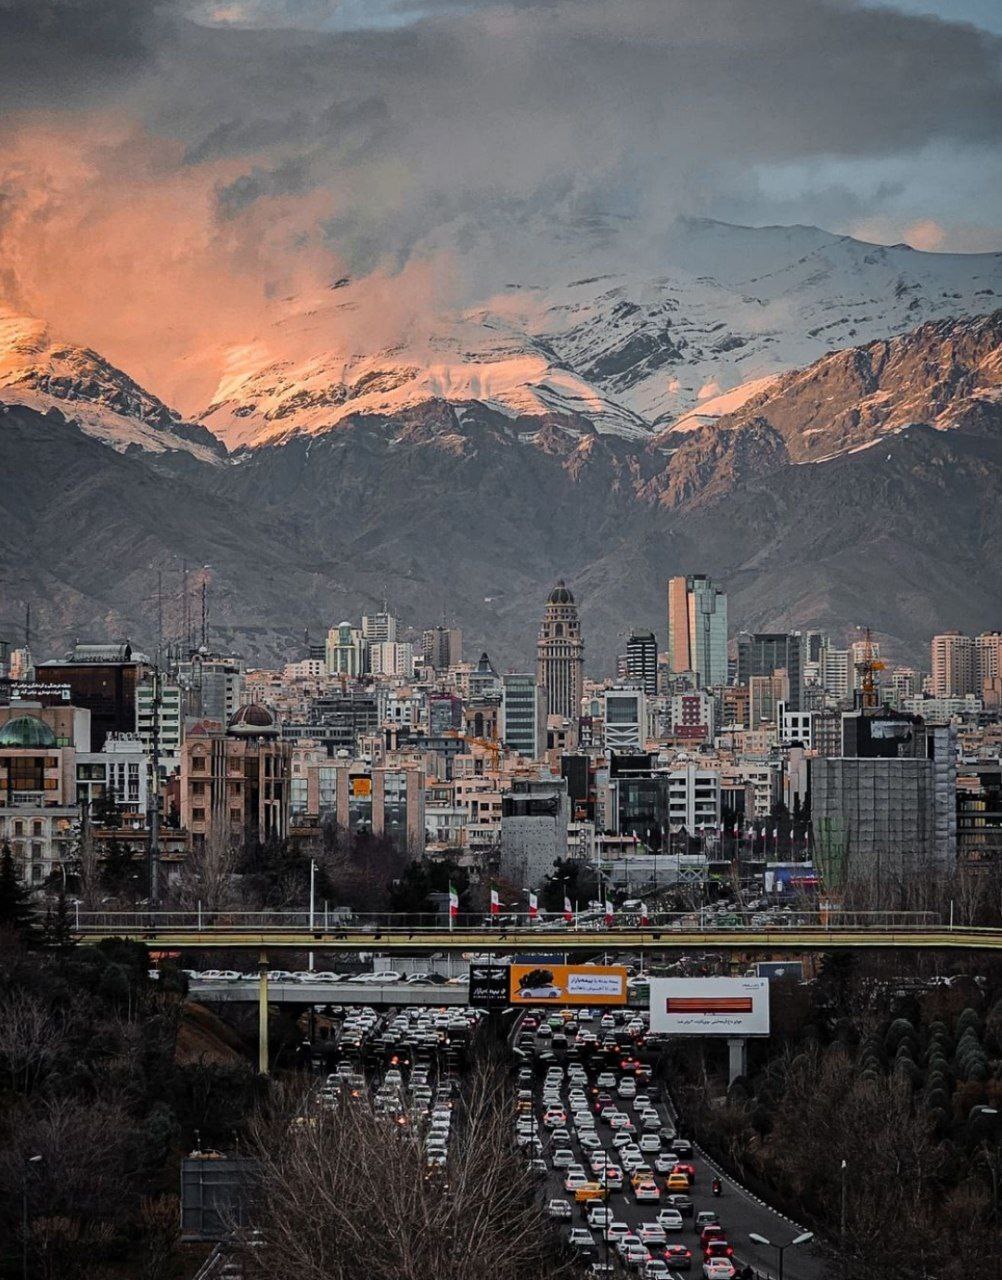 نکته خاص در عکسی که دیروز از تهران ثبت شد